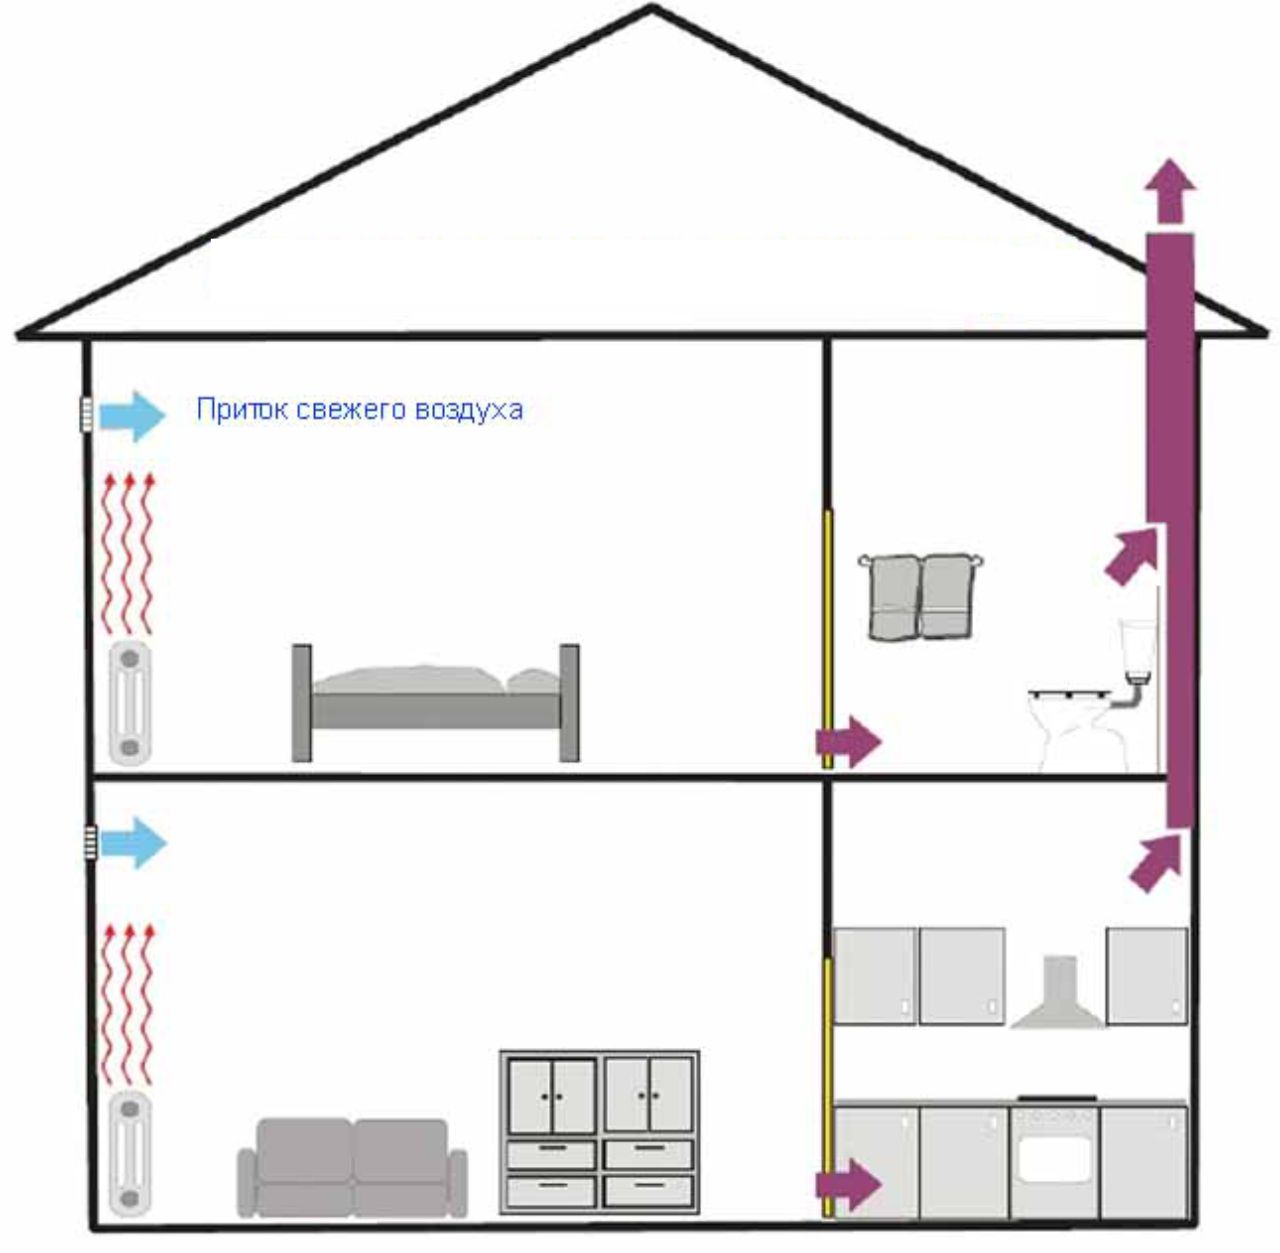 С естественным побуждением. Вытяжная система вентиляции в частном доме схема. Схема приточно-вытяжной вентиляции в частном доме. Схема естественной вентиляции в частном доме 2 этажа. Схема монтажа вентиляции в частном доме.